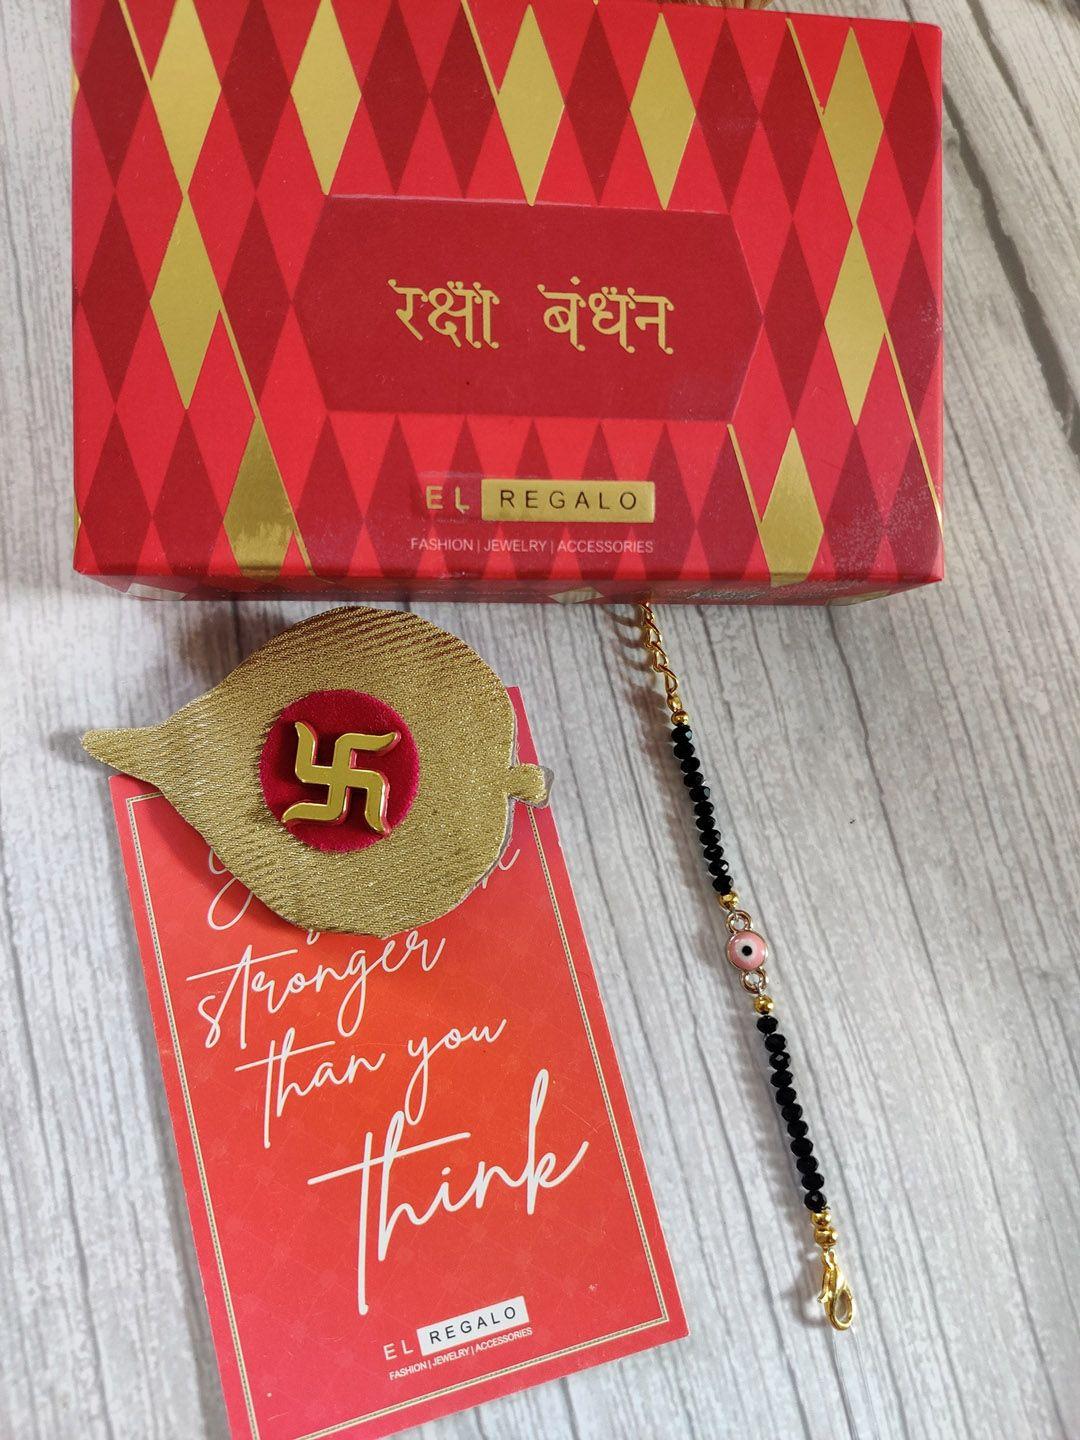 el regalo pink & gold coloured evil eye wrap around rakhi with roli chawal & raksha bandhan greeting card